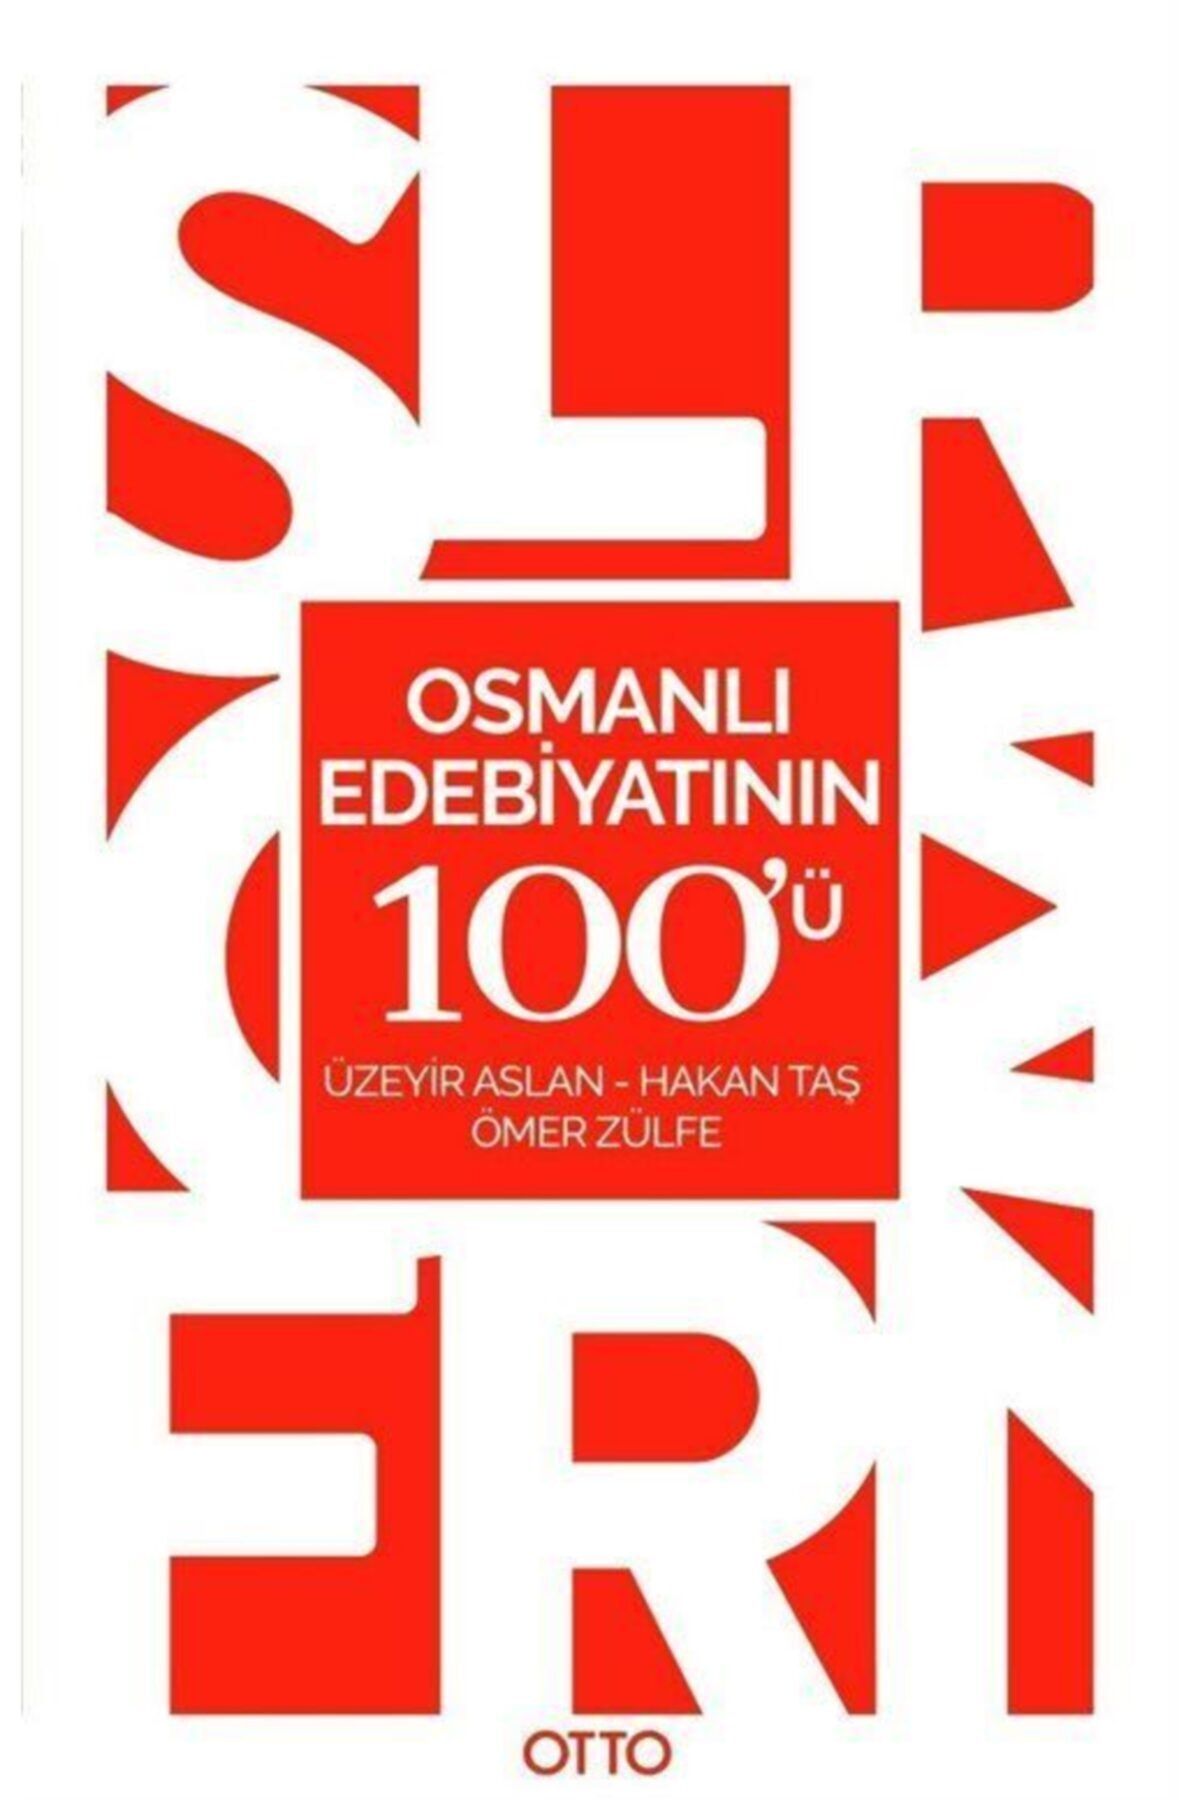 Otto Osmanlı Edebiyatının 100'ü - Hakan Taş,ömer Zülfe,üzeyir Aslan